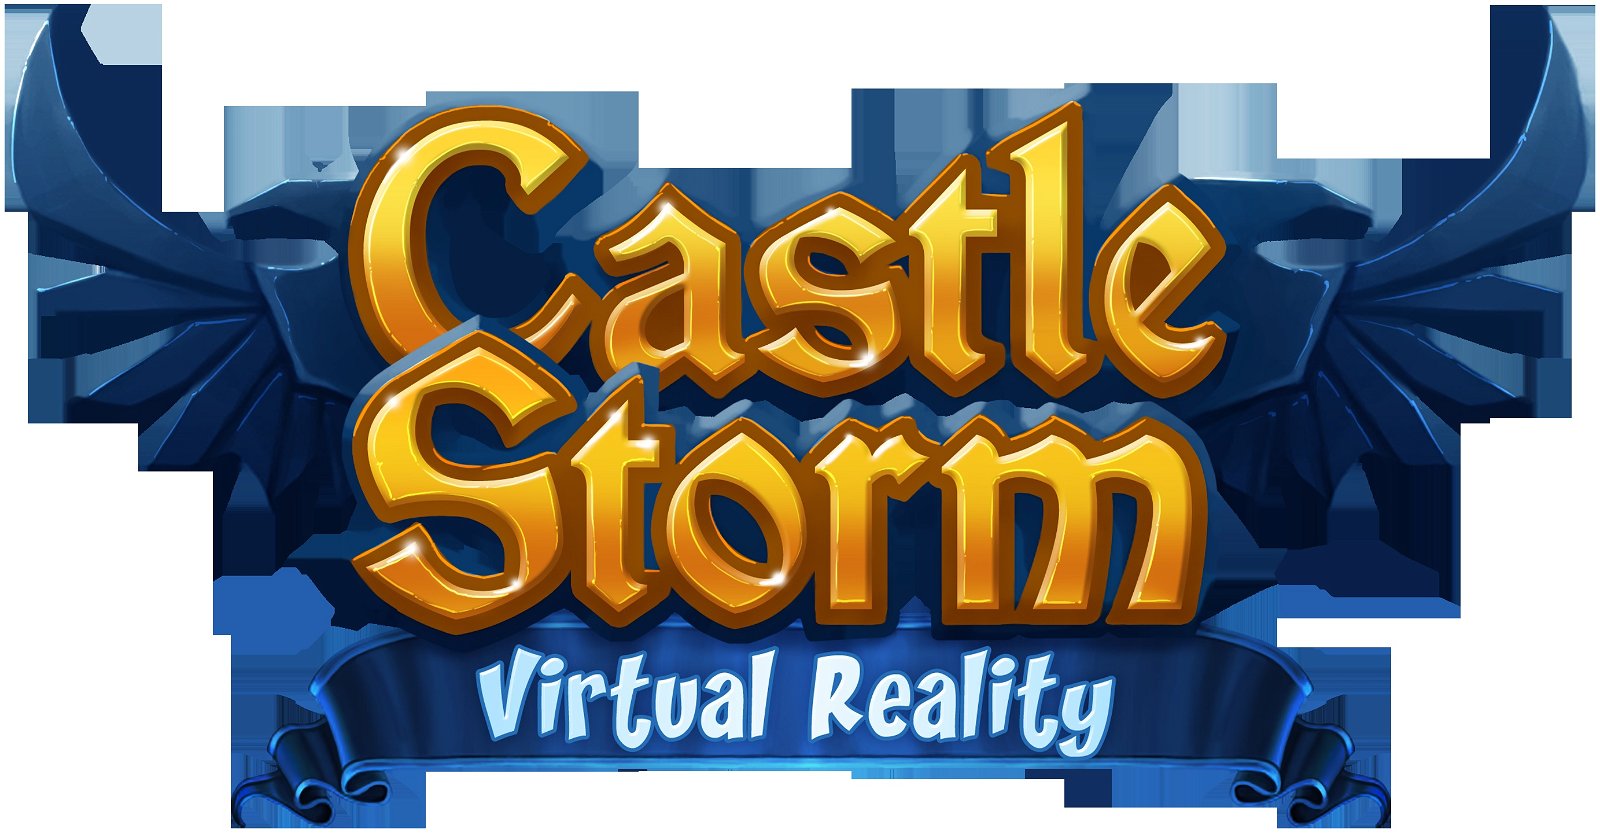 Image of CastleStorm VR